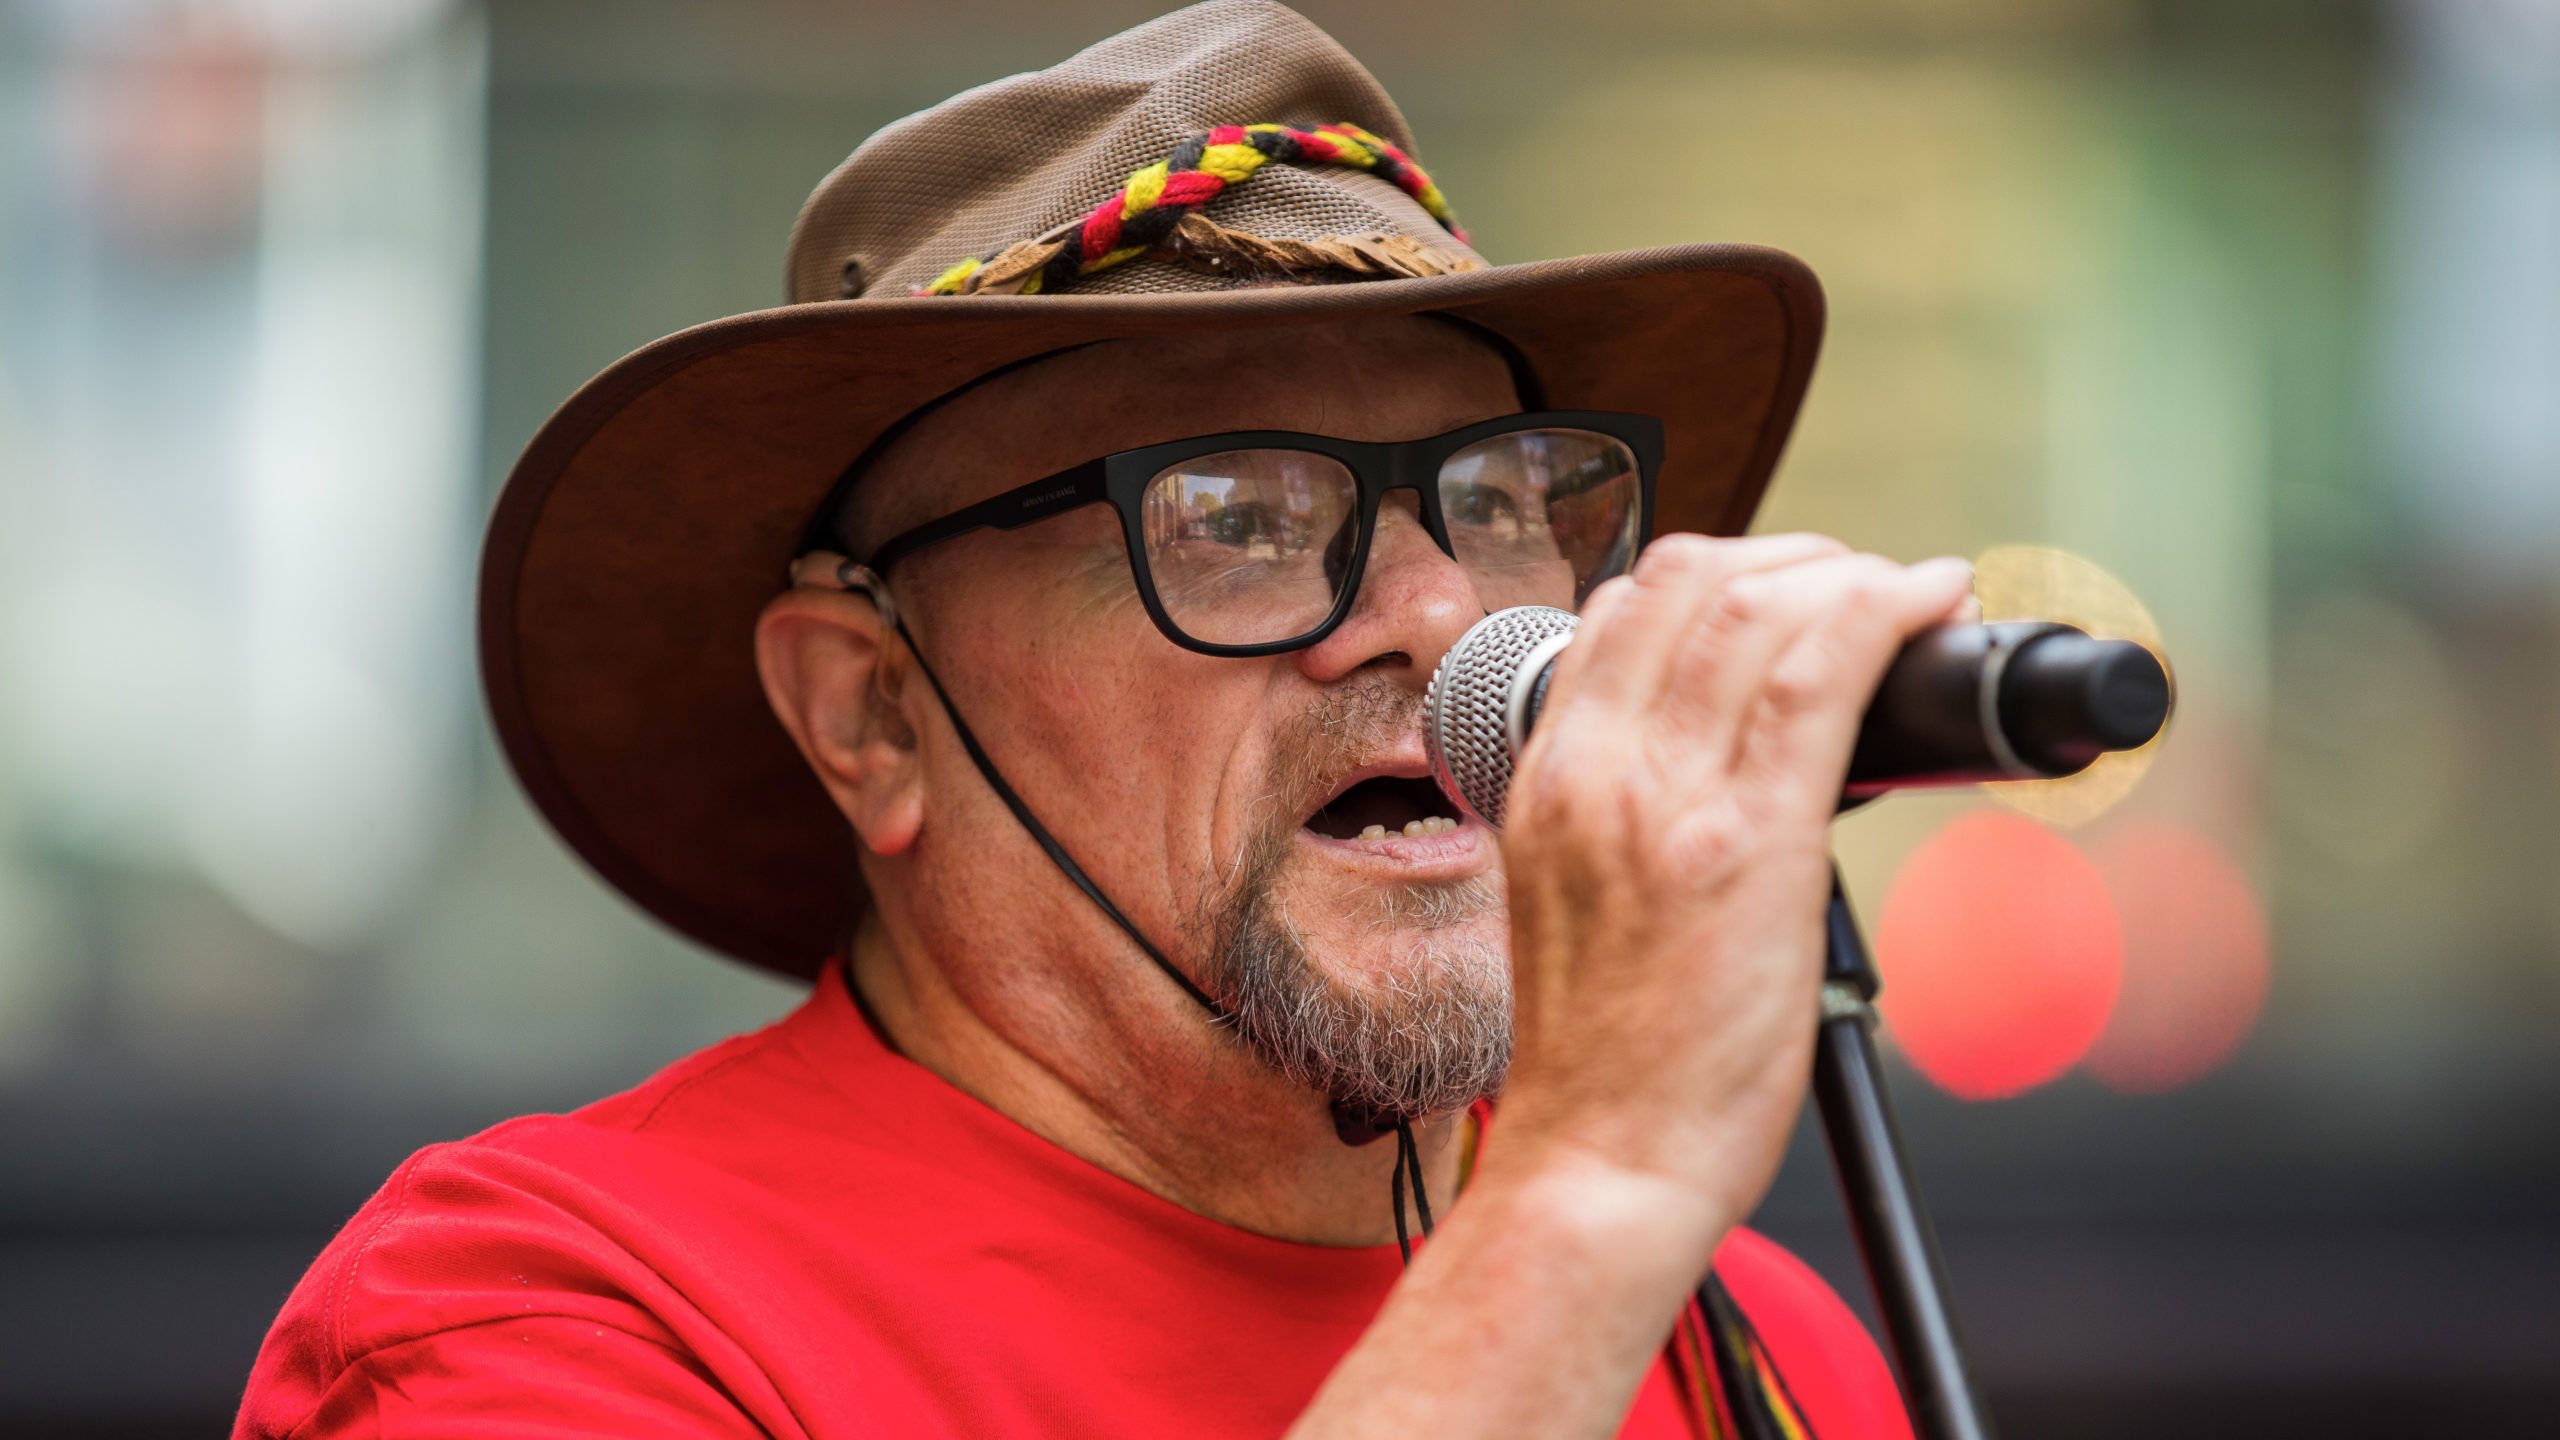 Sydney Street Choir unites voices for reconciliation